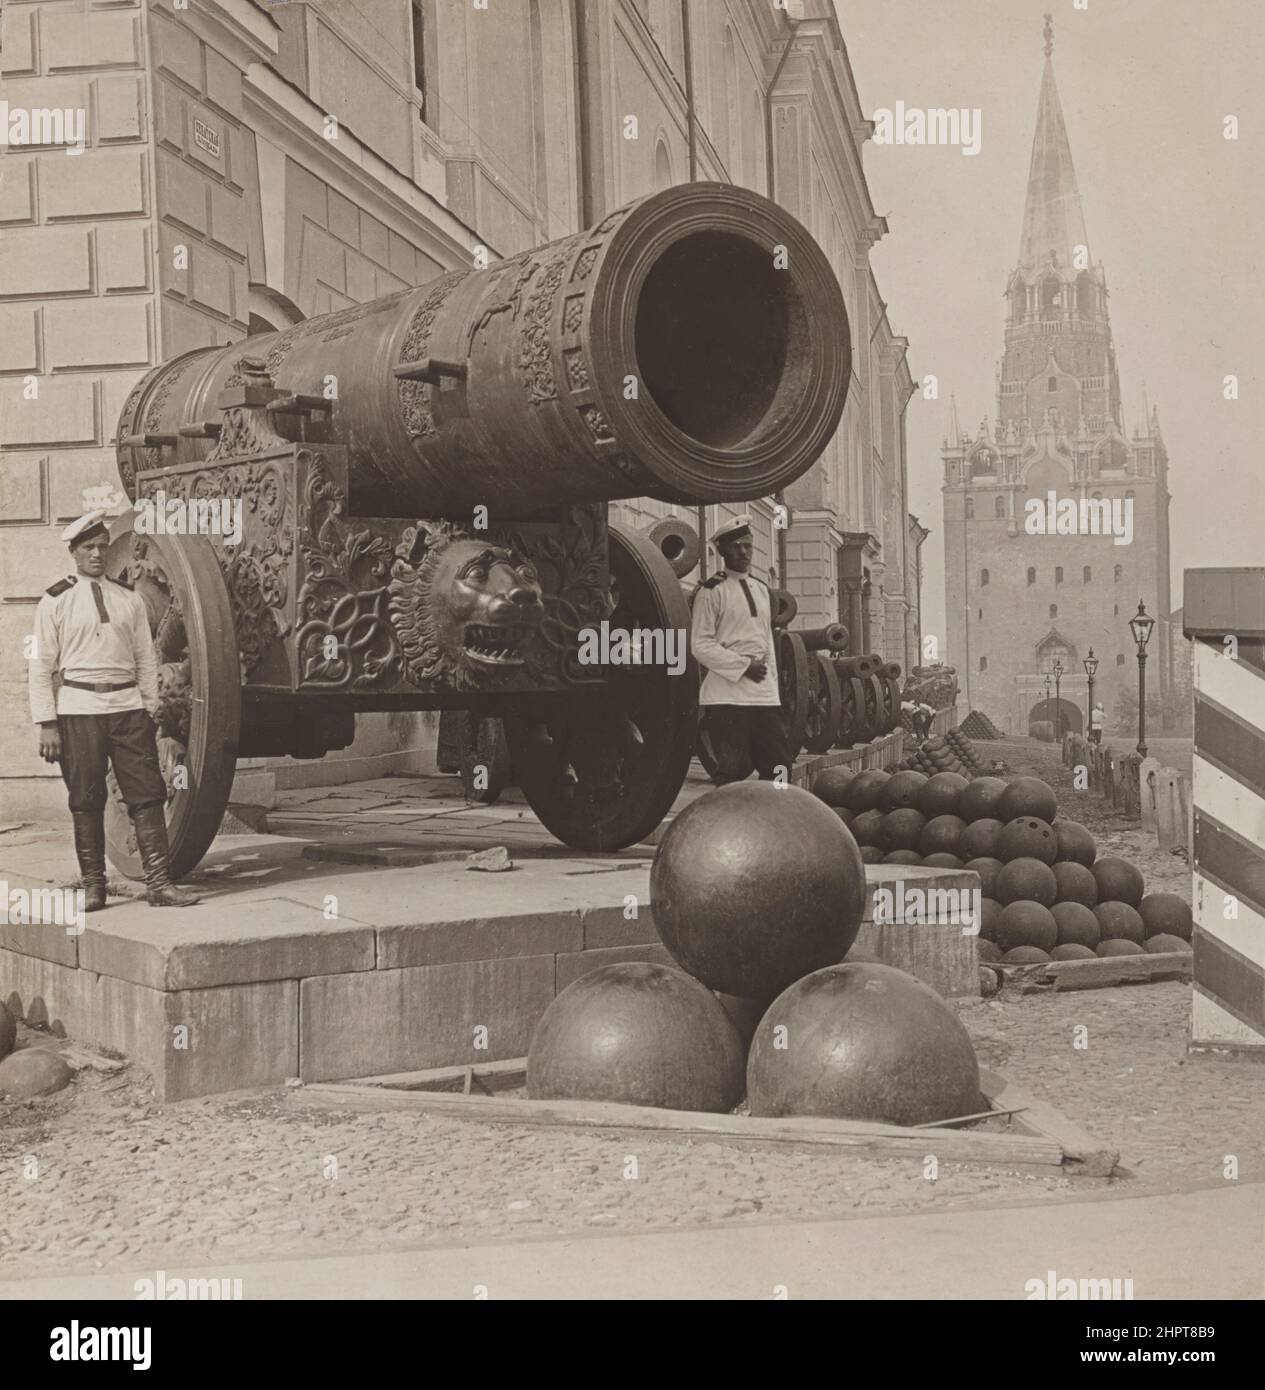 Vintage-Foto von Zar Cannon im Moskauer Kreml. Russisches Reich. 1900s die Zar-Kanone ist ein großes Artillerieteil der frühen Neuzeit (bekannt als b Stockfoto